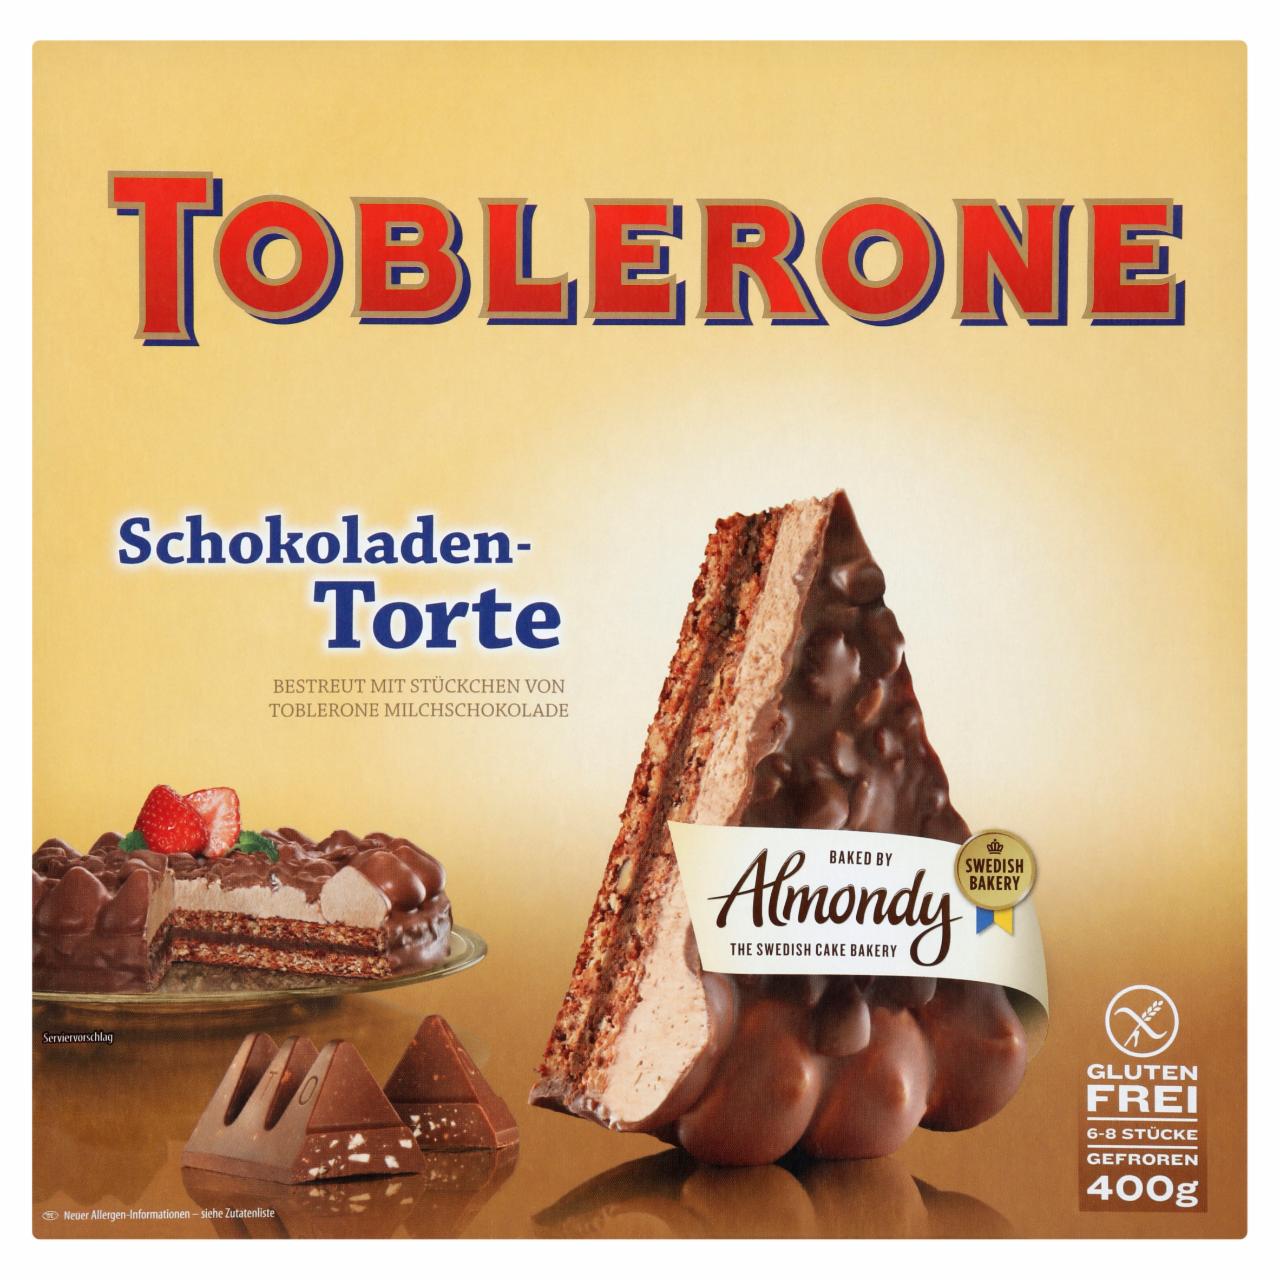 Képek - Toblerone gluténmentes, gyorsfagyasztott csokoládé torta Toblerone darabkákkal 400 g